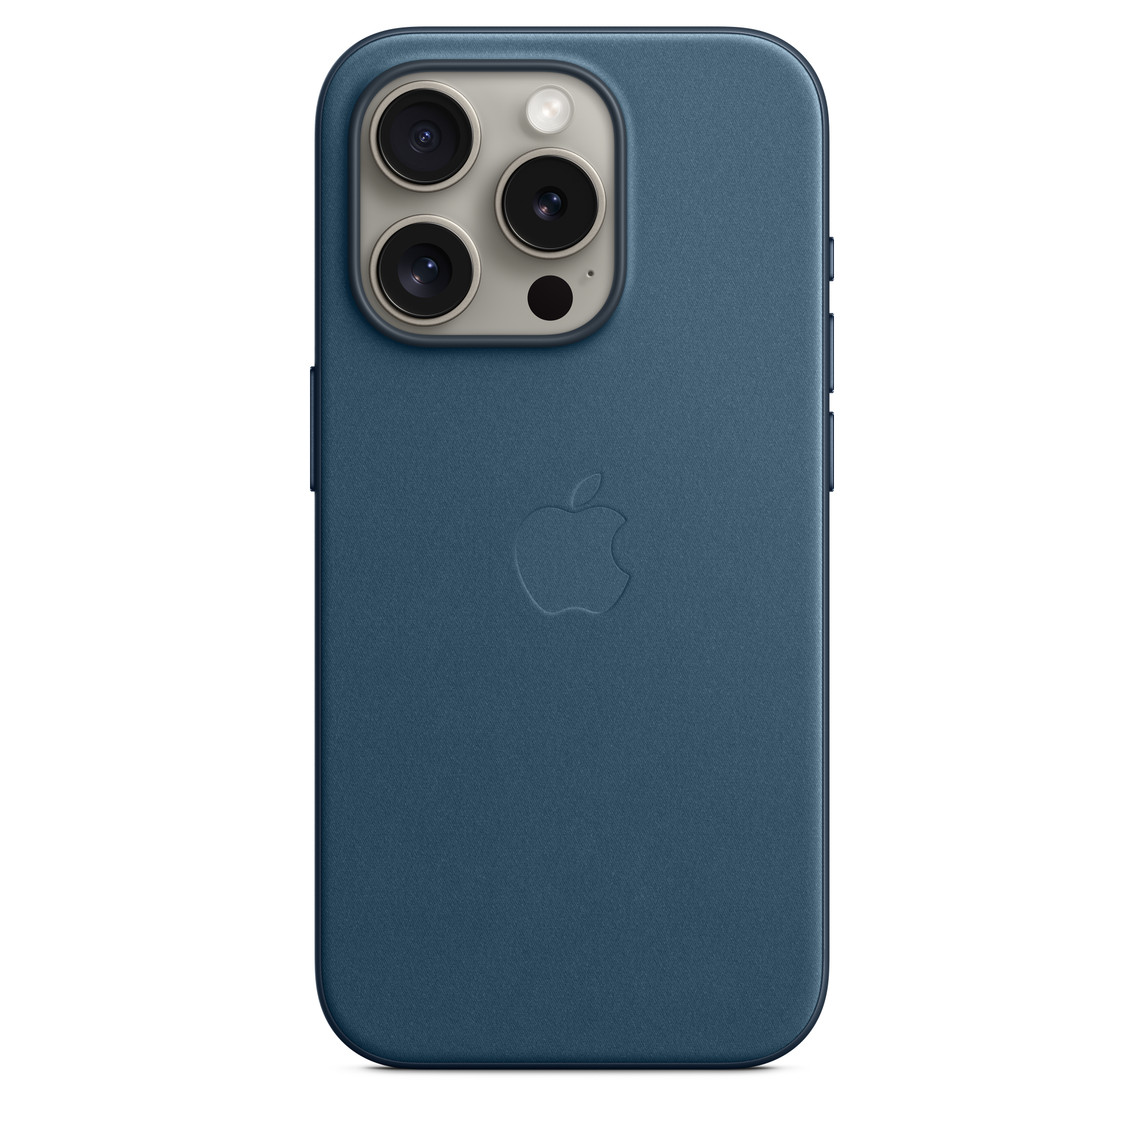 Coque en tissage fin bleu Pacifique avec MagSafe pour iPhone 15 Pro, logo Apple intégré au centre, fixée à un iPhone 15 Pro titane naturel, vu à travers la découpe pour l’appareil photo.